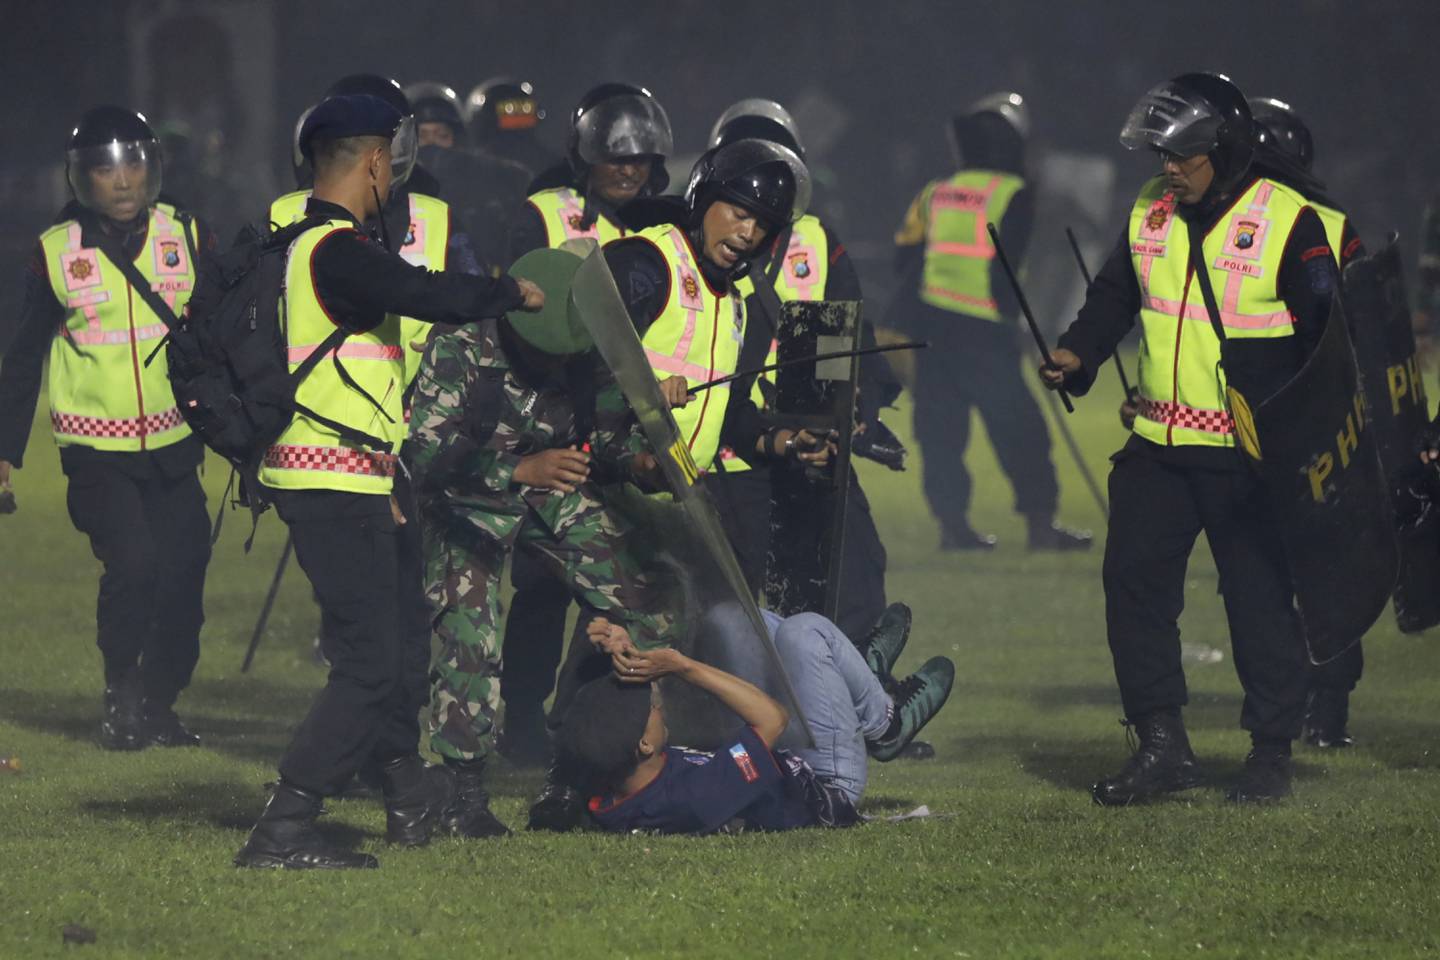 Agentes de seguridad detienen a un aficionado durante una serie de trifulcas en un partido de fútbol en Indonesia